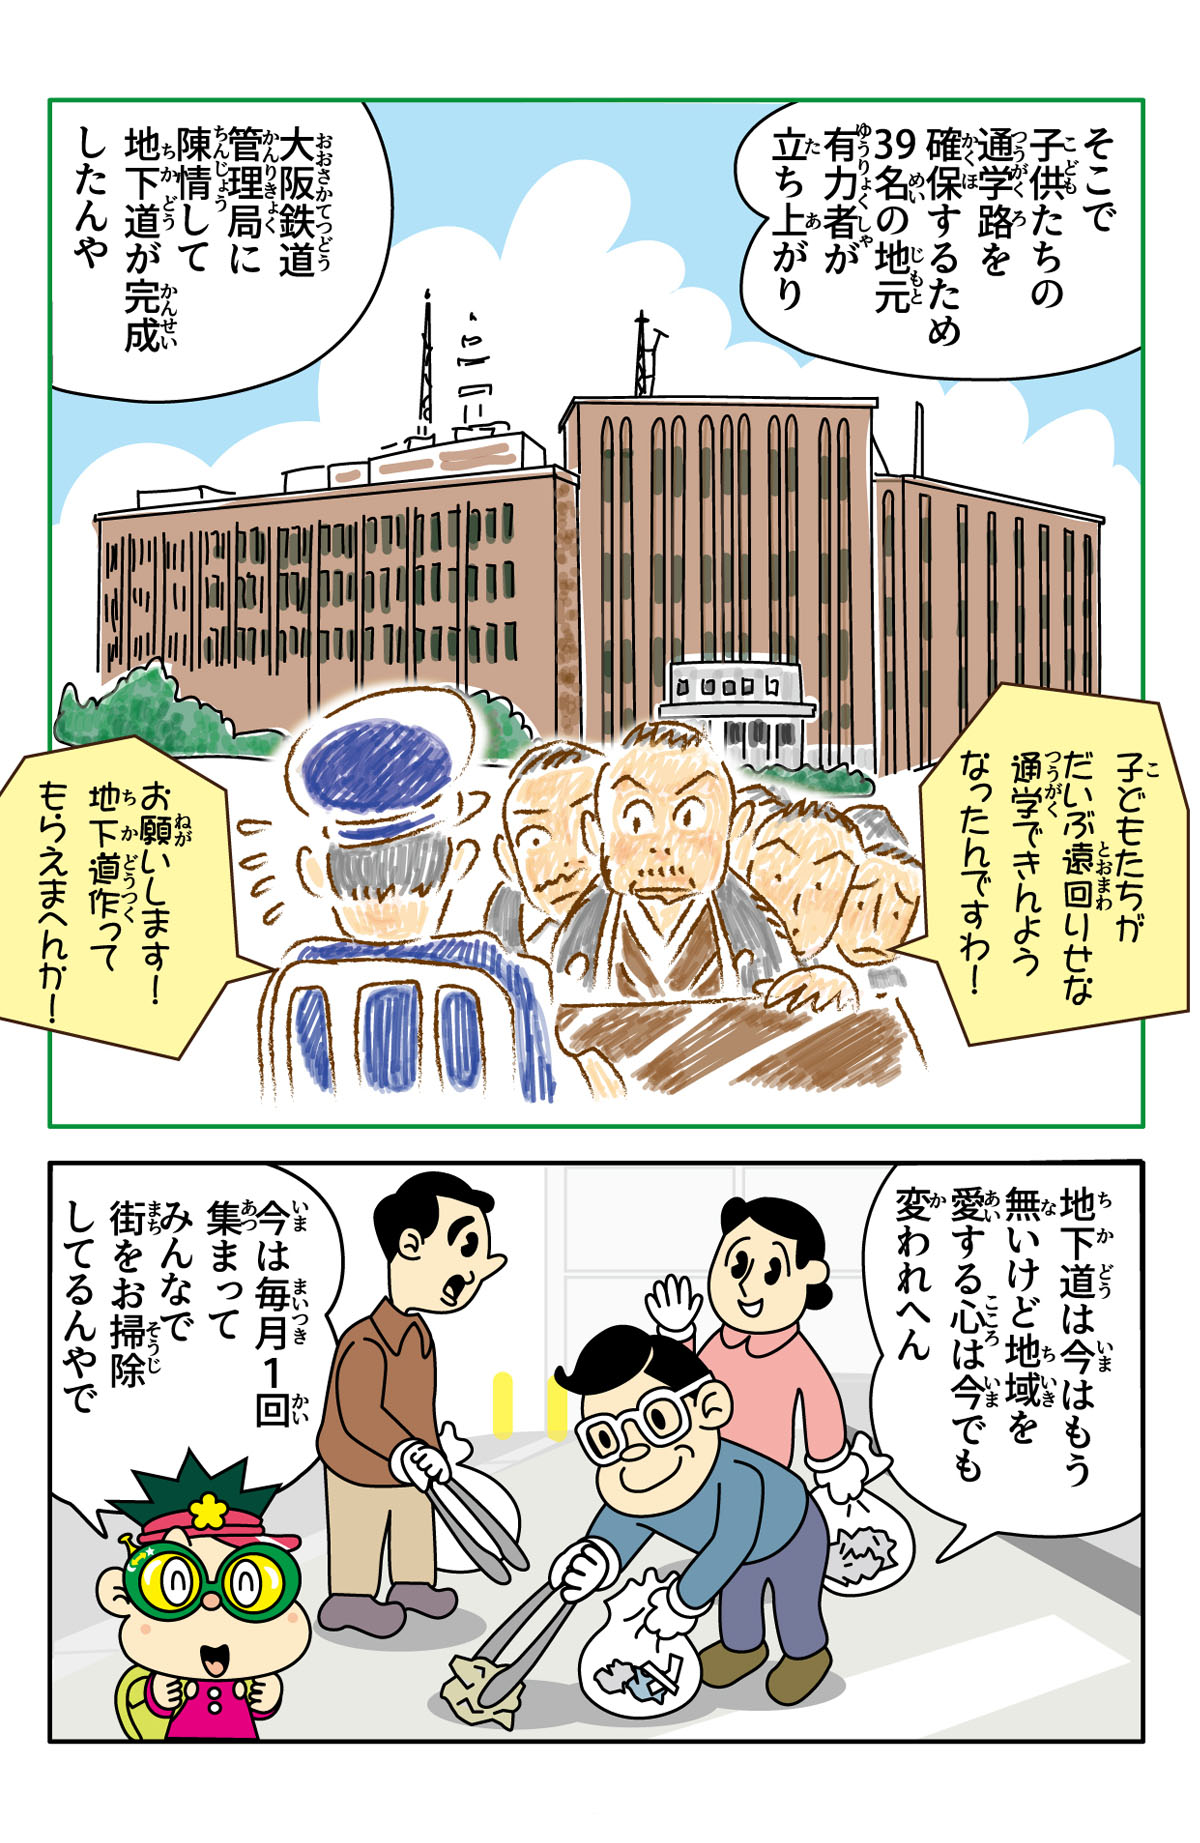 梅北道路（北梅田地下道）の歴史漫画 2